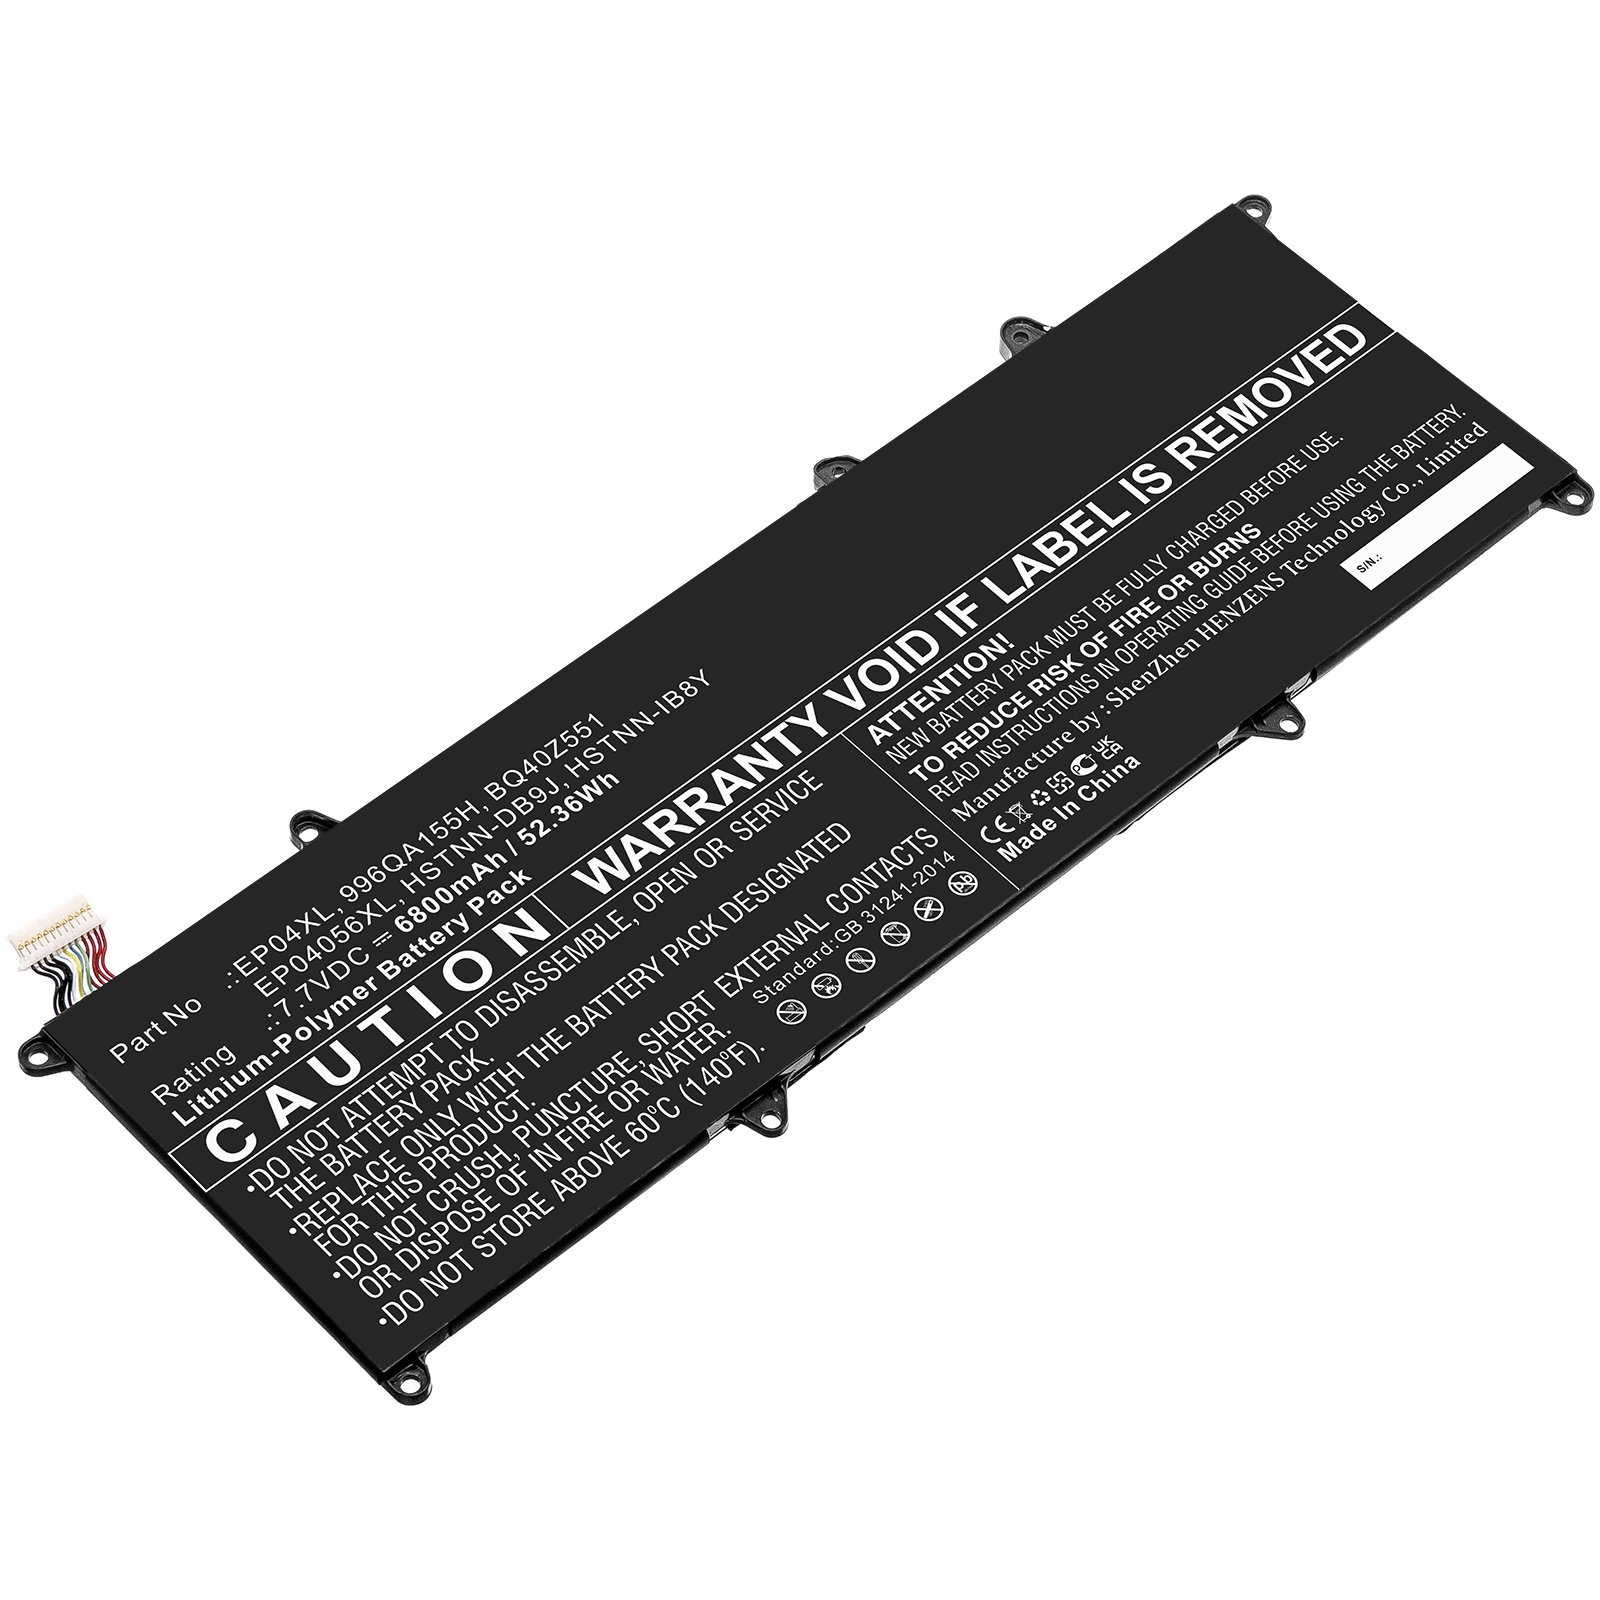 Synergy Digital Laptop Battery, Compatible with HP BQ40Z551 Laptop Battery (Li-Pol, 7.7V, 6800mAh)